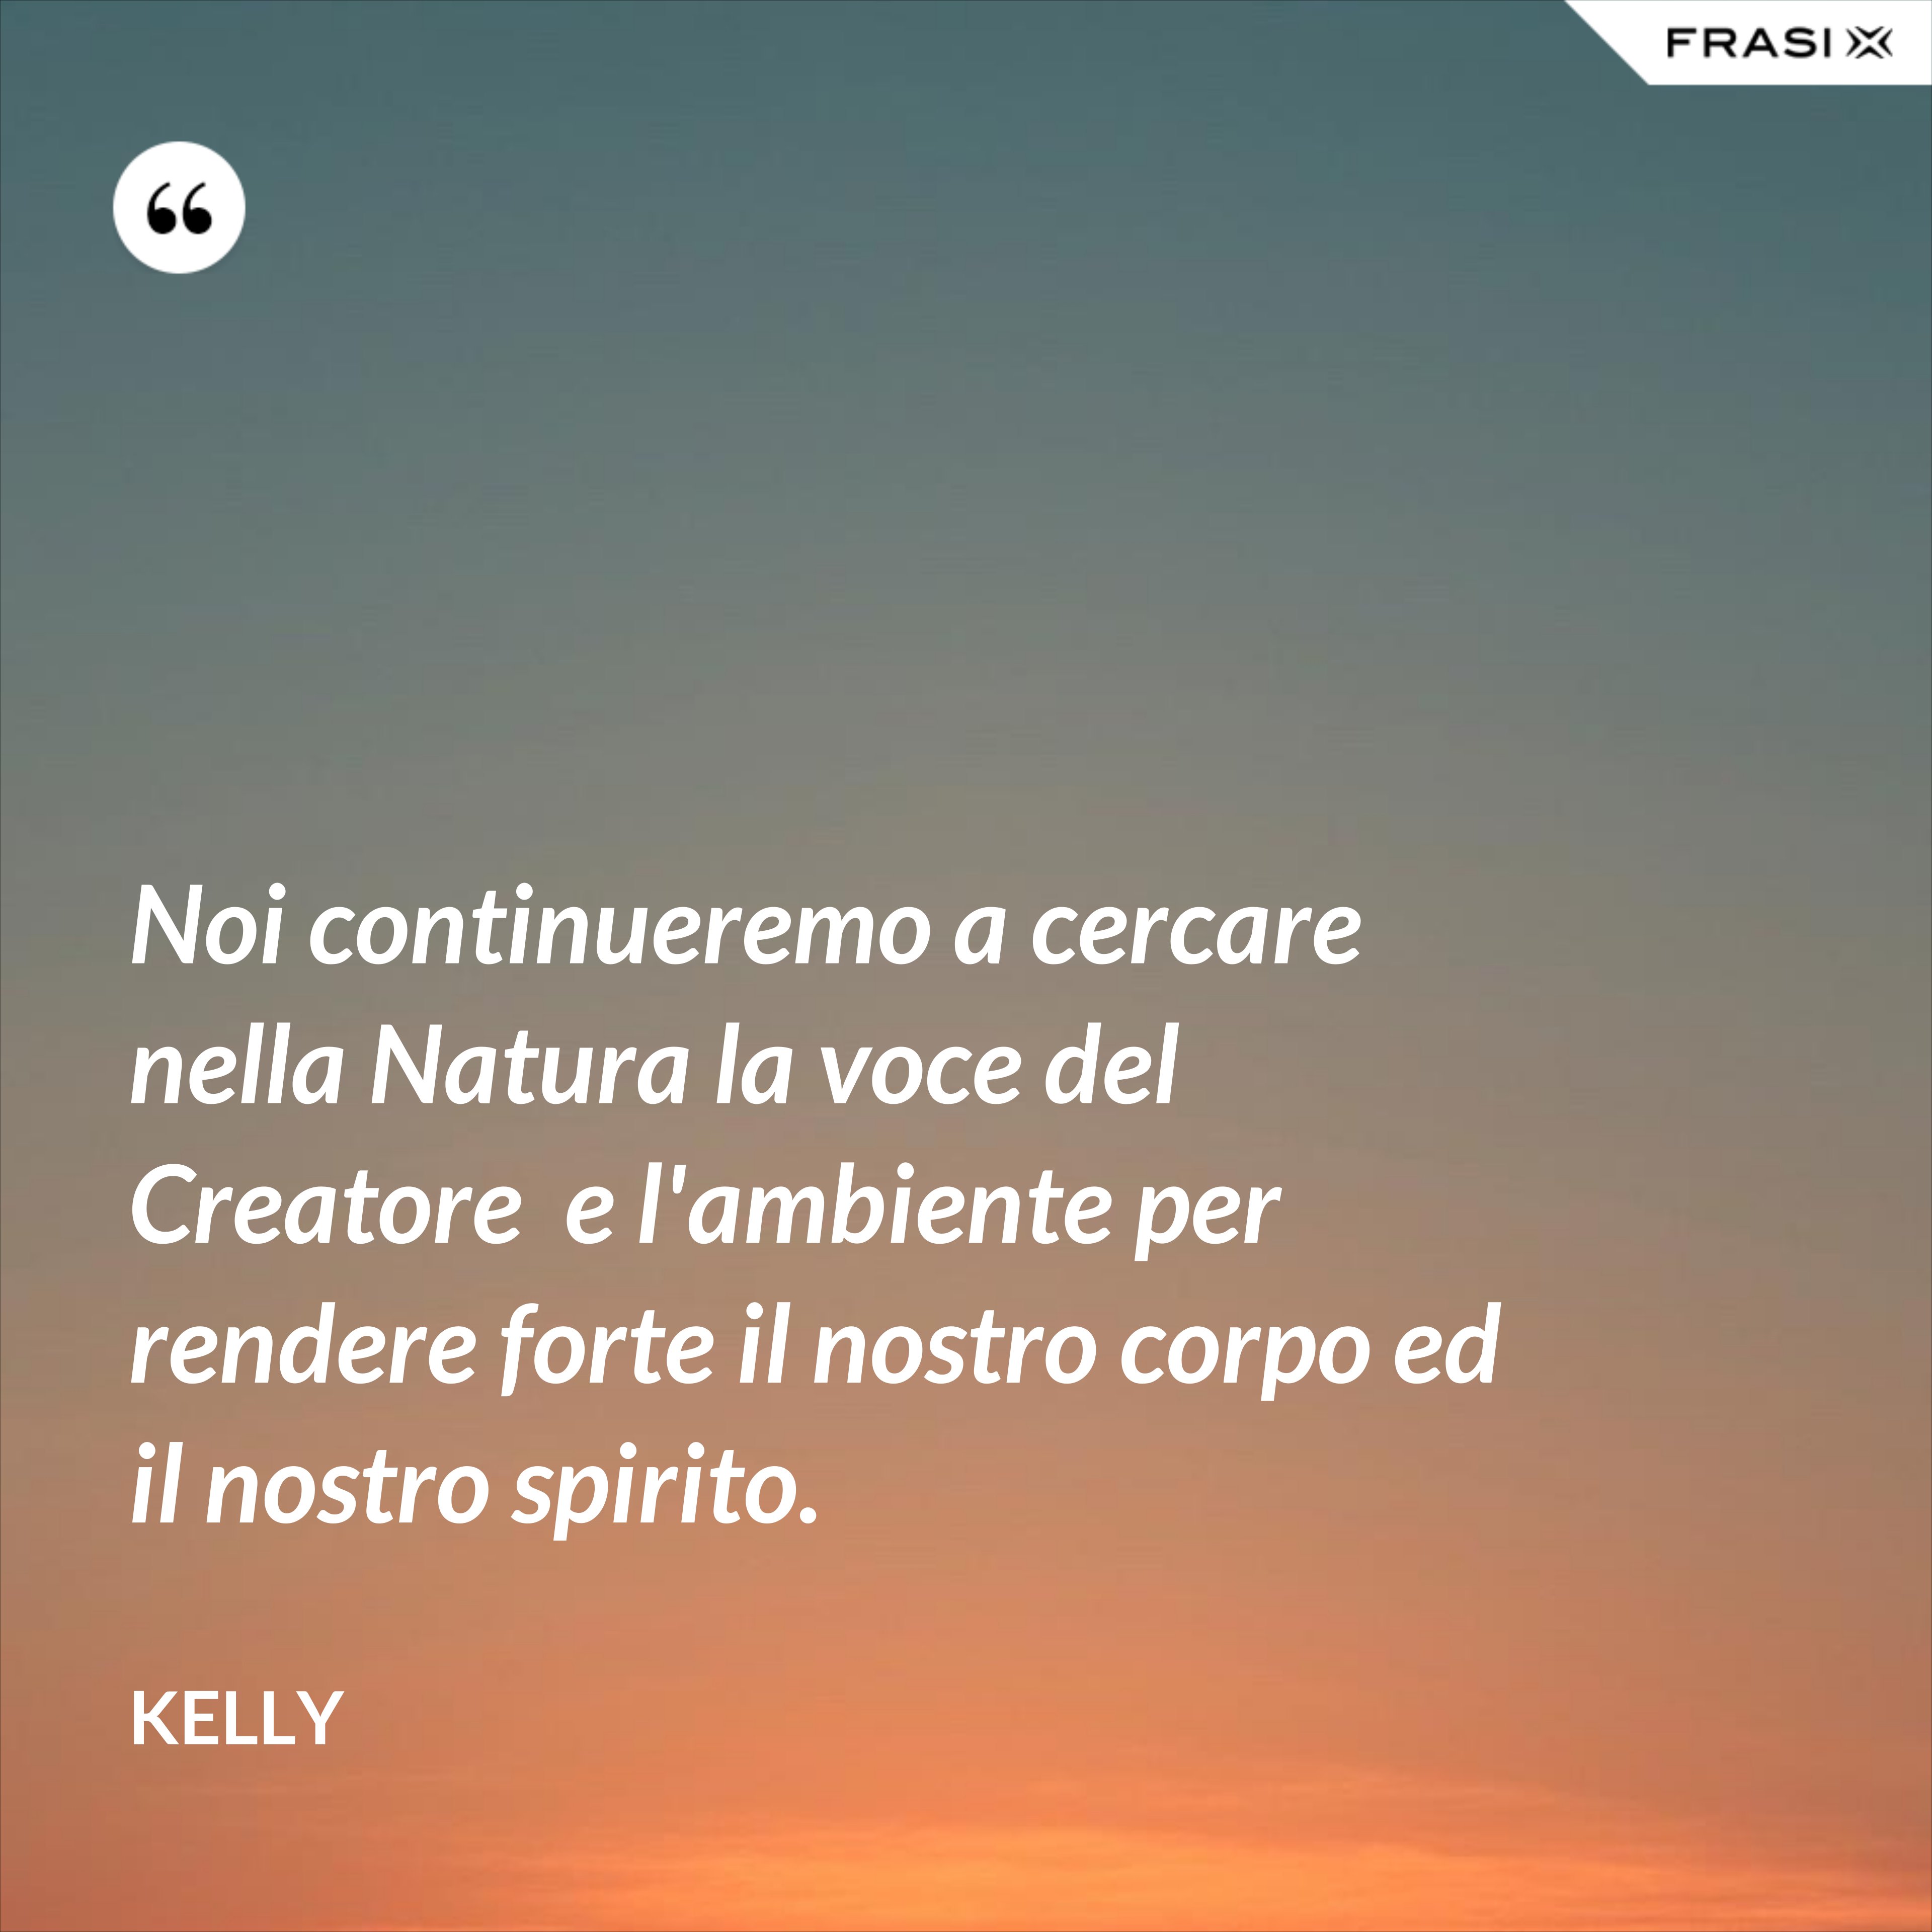 Noi continueremo a cercare nella Natura la voce del Creatore  e l'ambiente per rendere forte il nostro corpo ed il nostro spirito. - Kelly